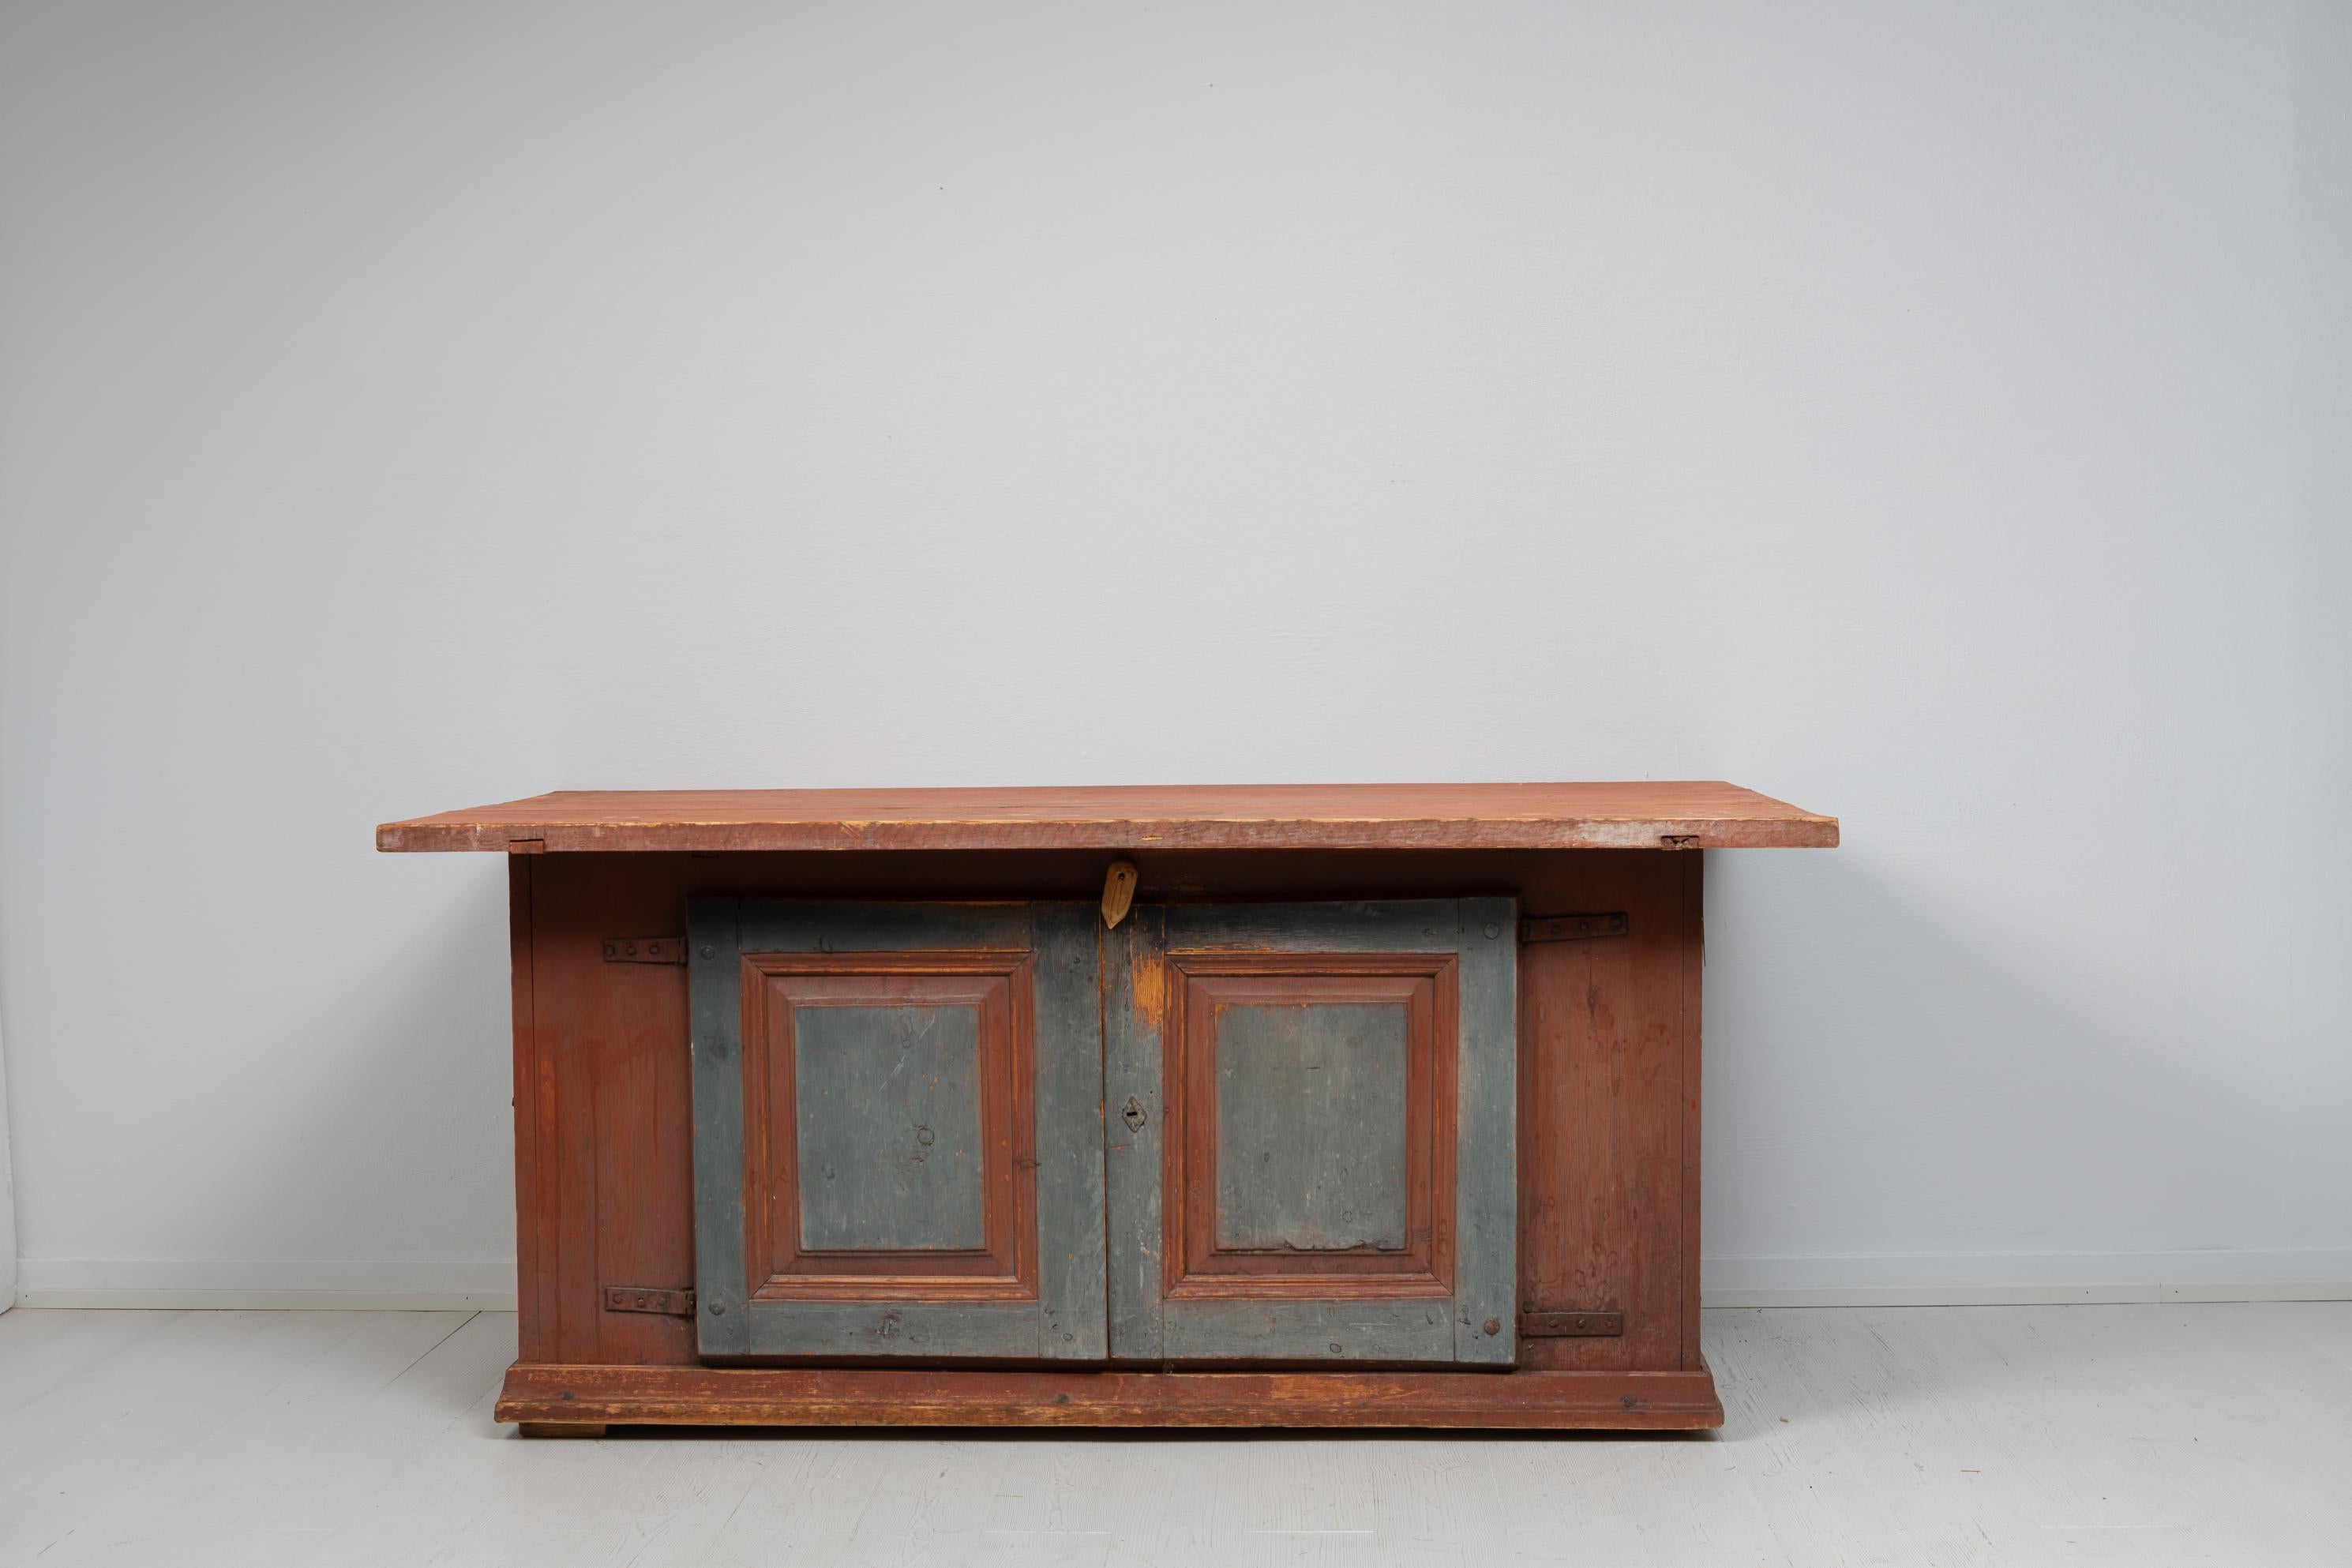 Table d'appoint de maison de campagne fabriquée à la main dans un modèle inhabituel. La table est de l'art populaire de Suède et a été fabriquée au début des années 1800. Il s'agit d'un modèle inhabituel car il combine des aspects des tables et des